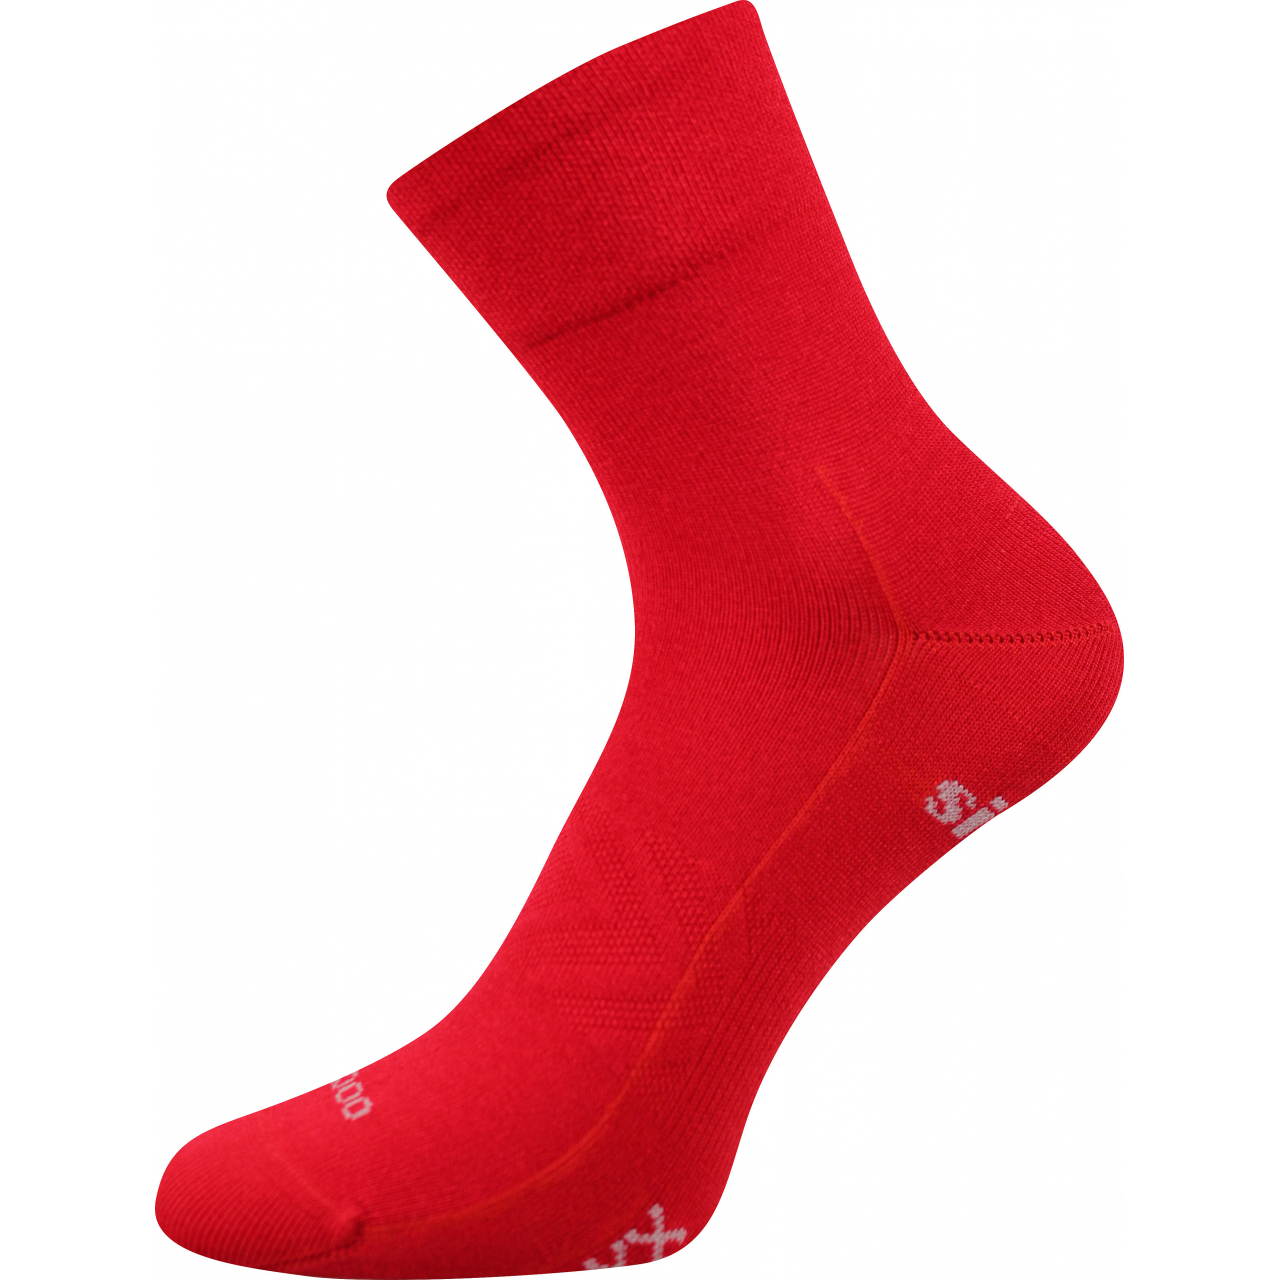 Ponožky sportovní unisex Voxx Baeron - červené, 35-38